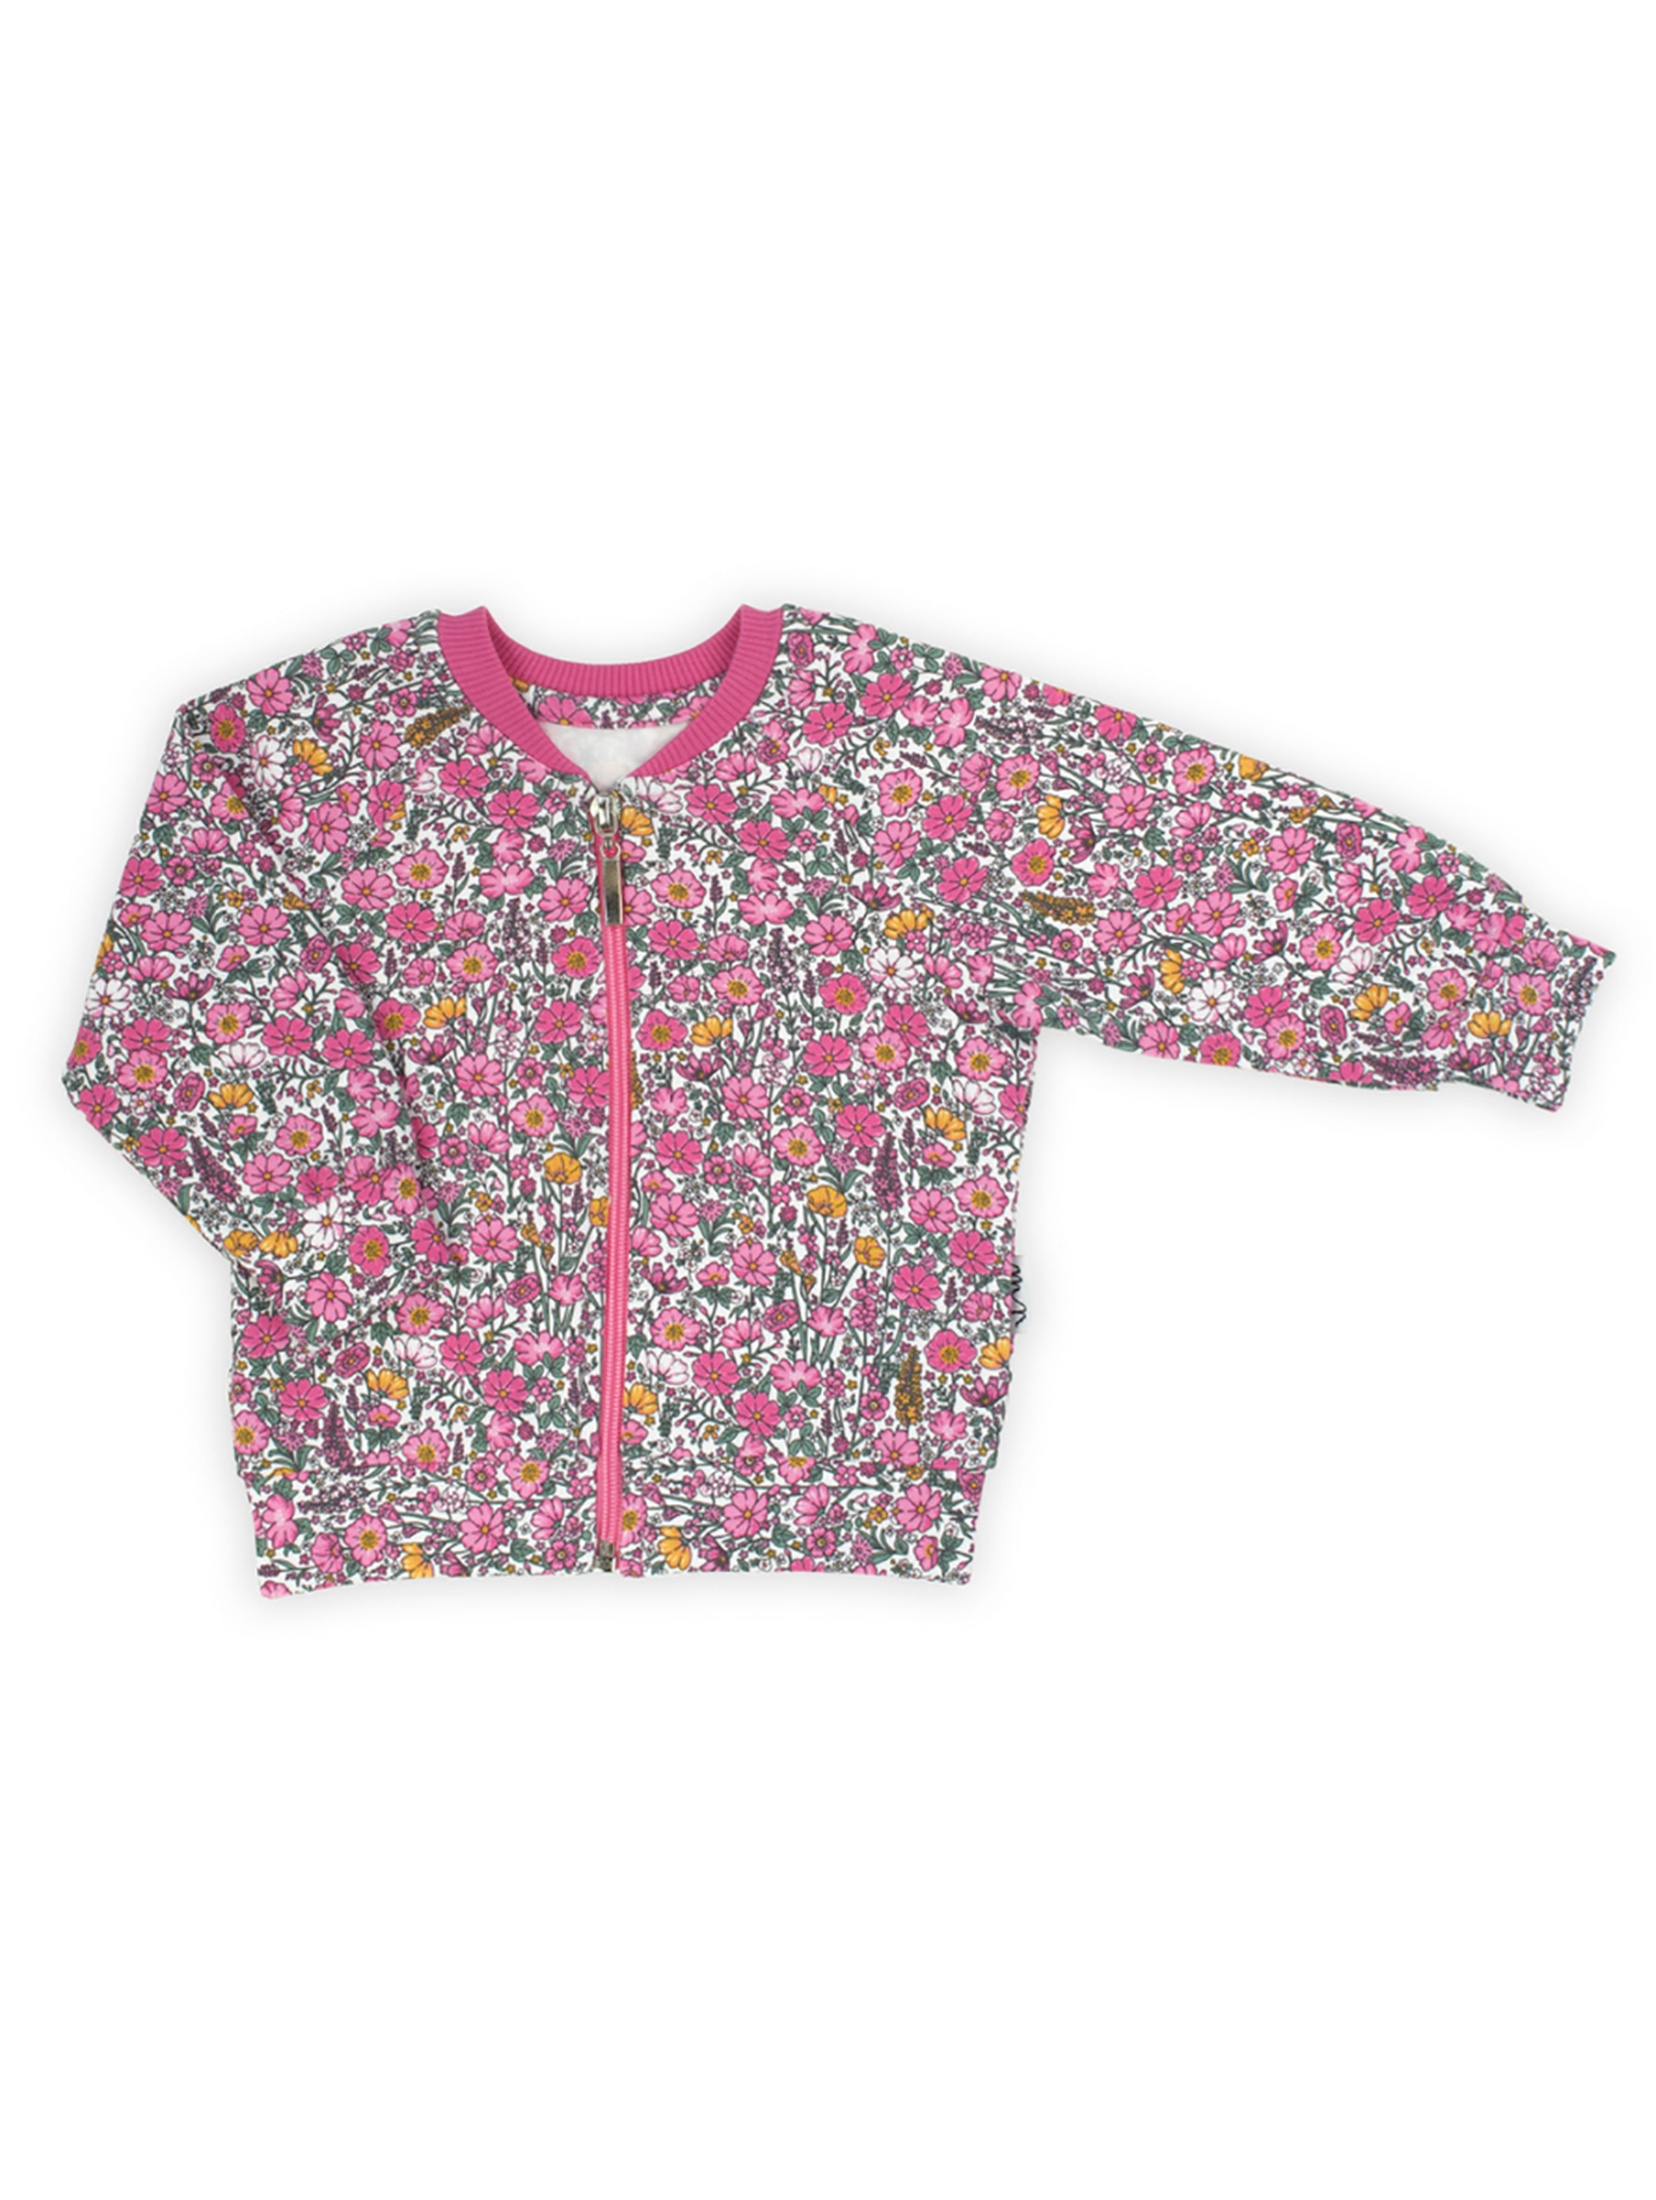 Bluza dresowa - boomerka dziewczęca w kwiatki Lea